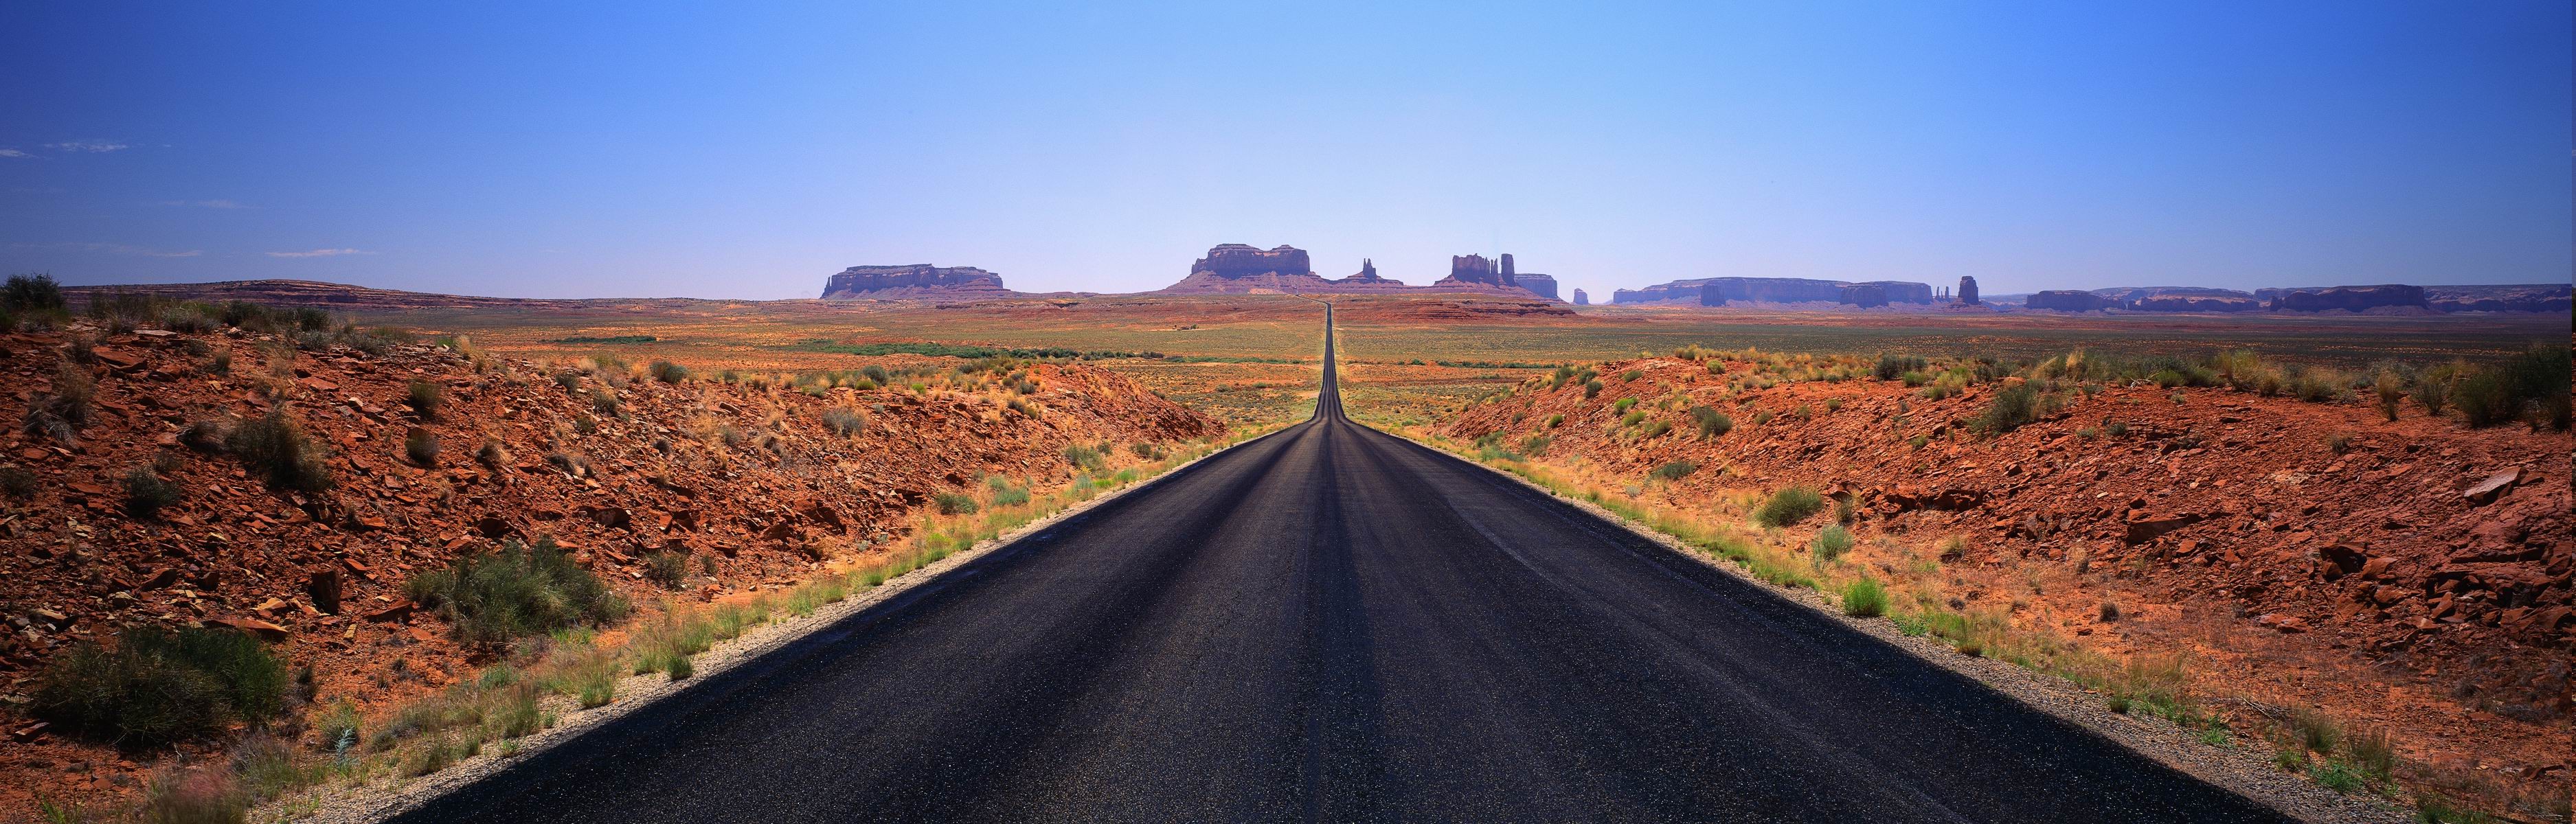 landscape, Monument Valley, Road, Desert Wallpaper